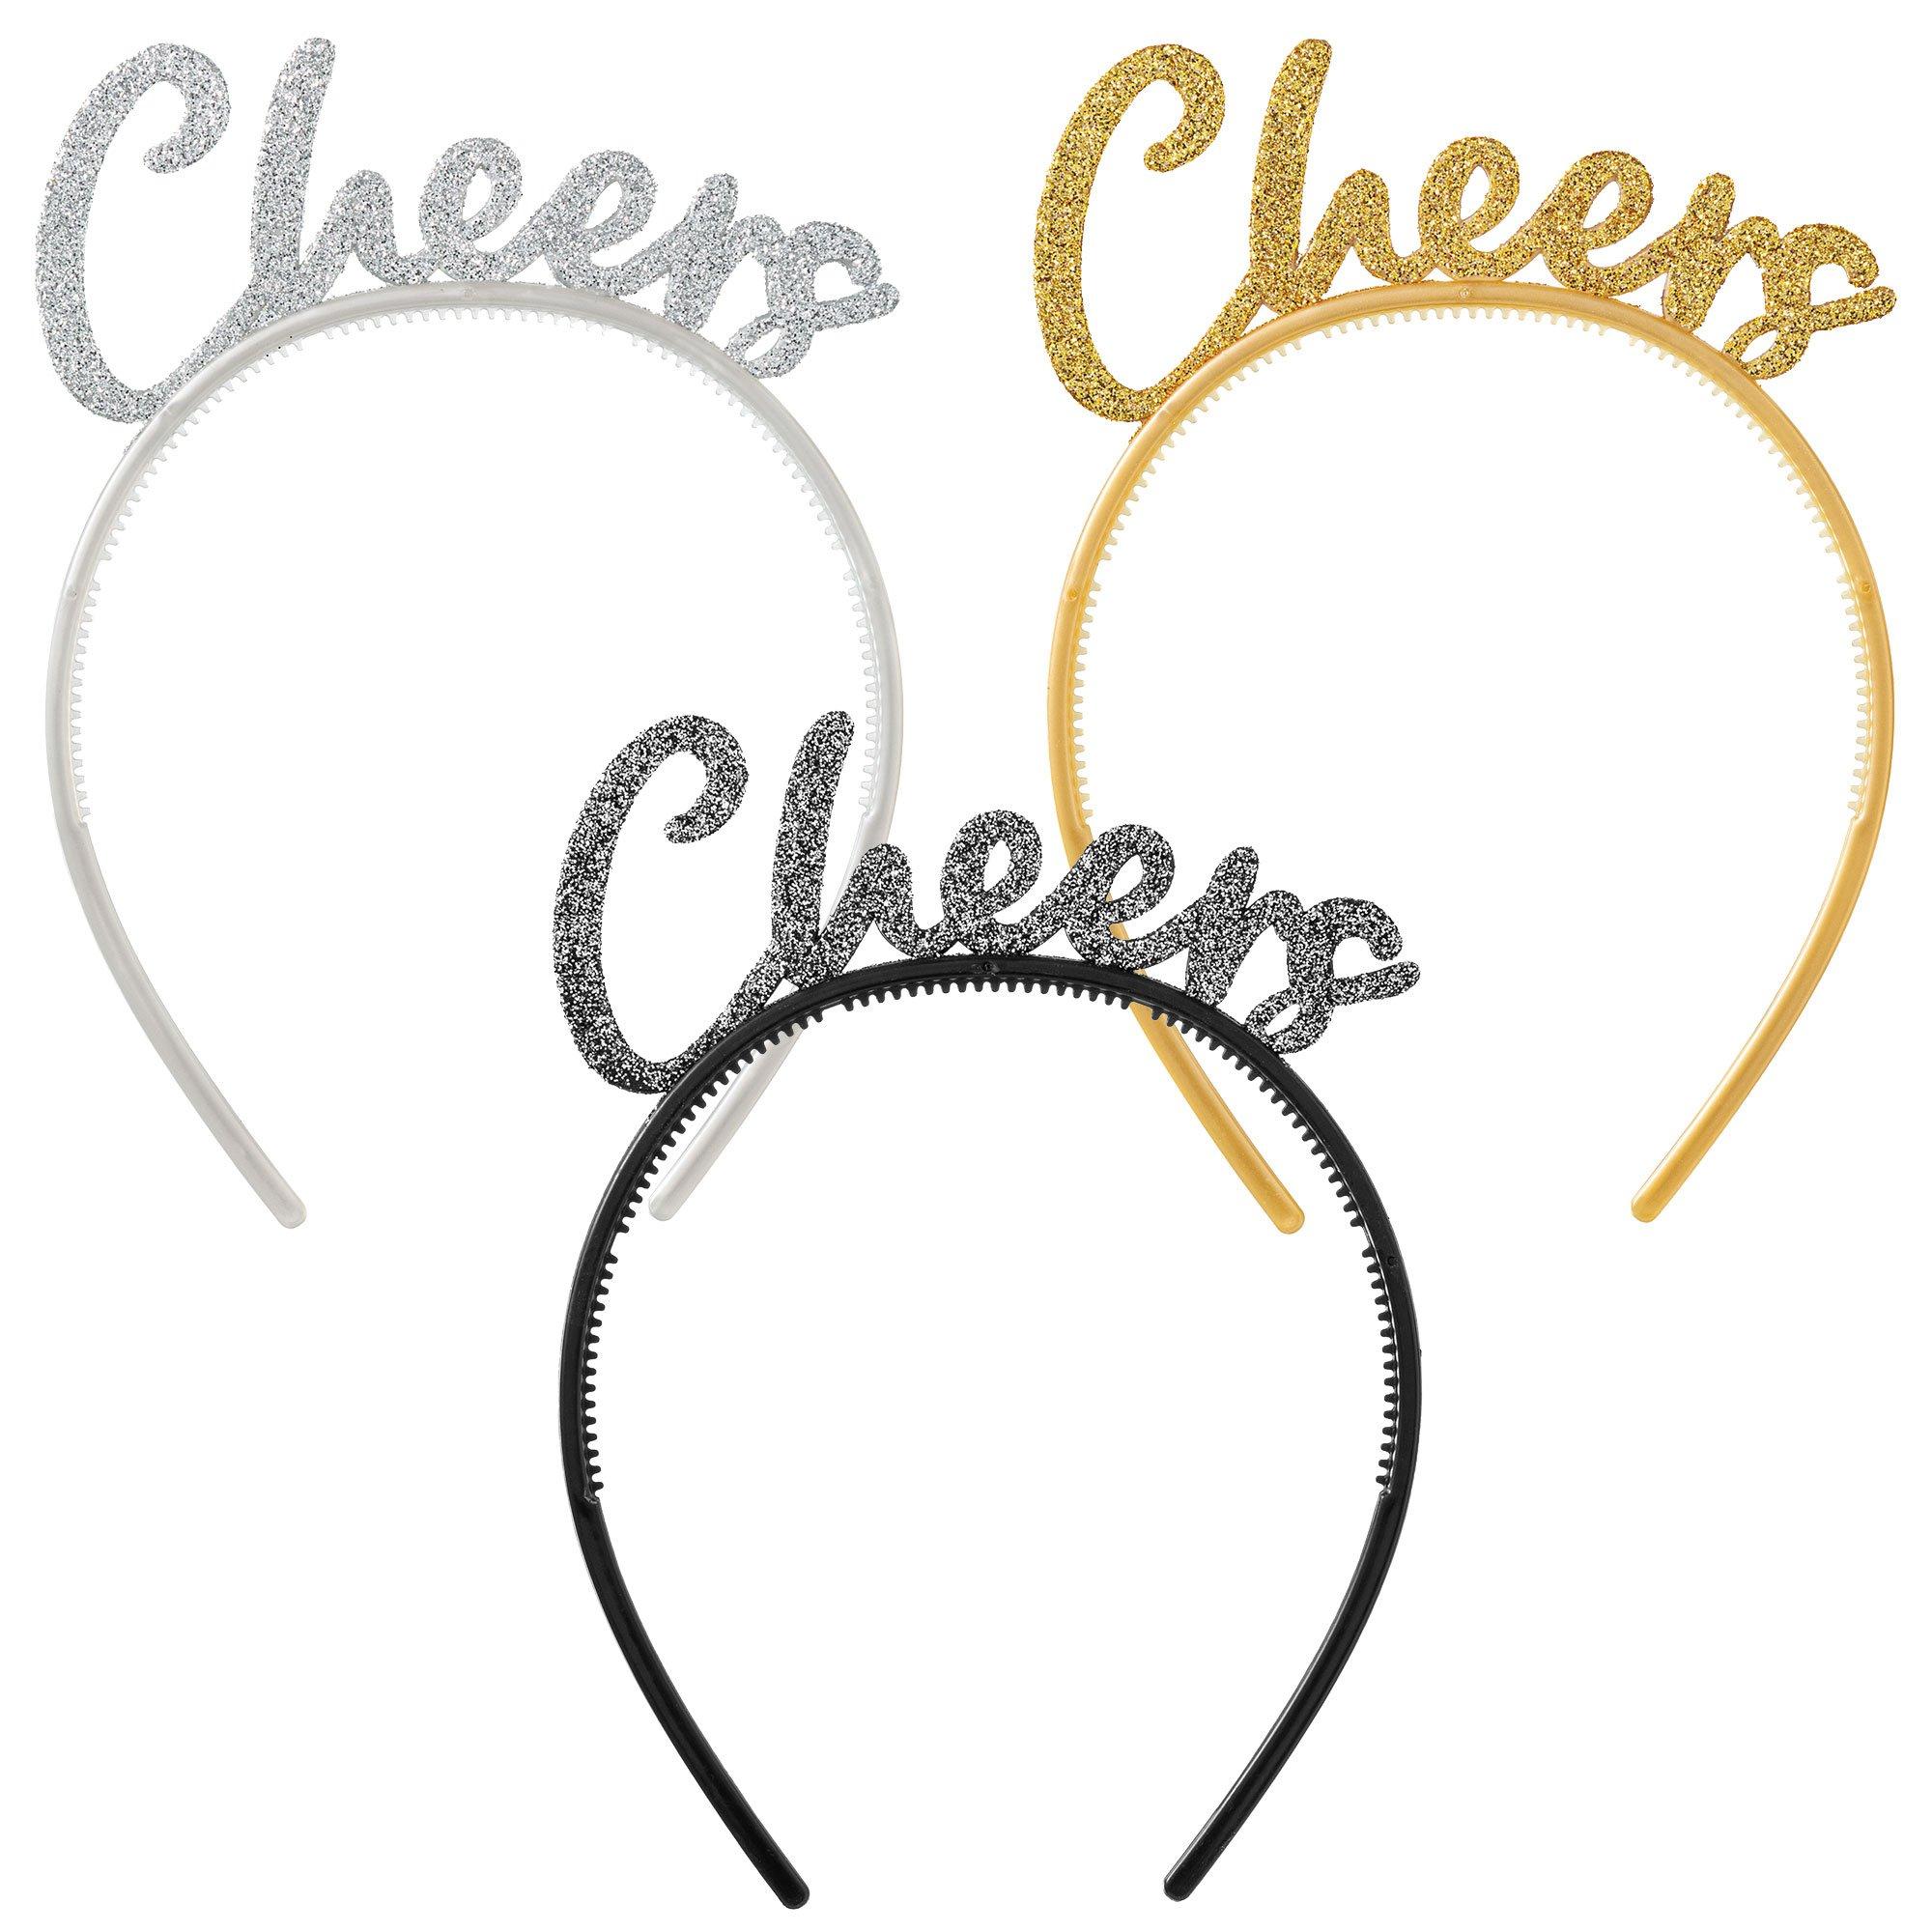 Glitter New Year's Eve Cheers Headbands, 6ct